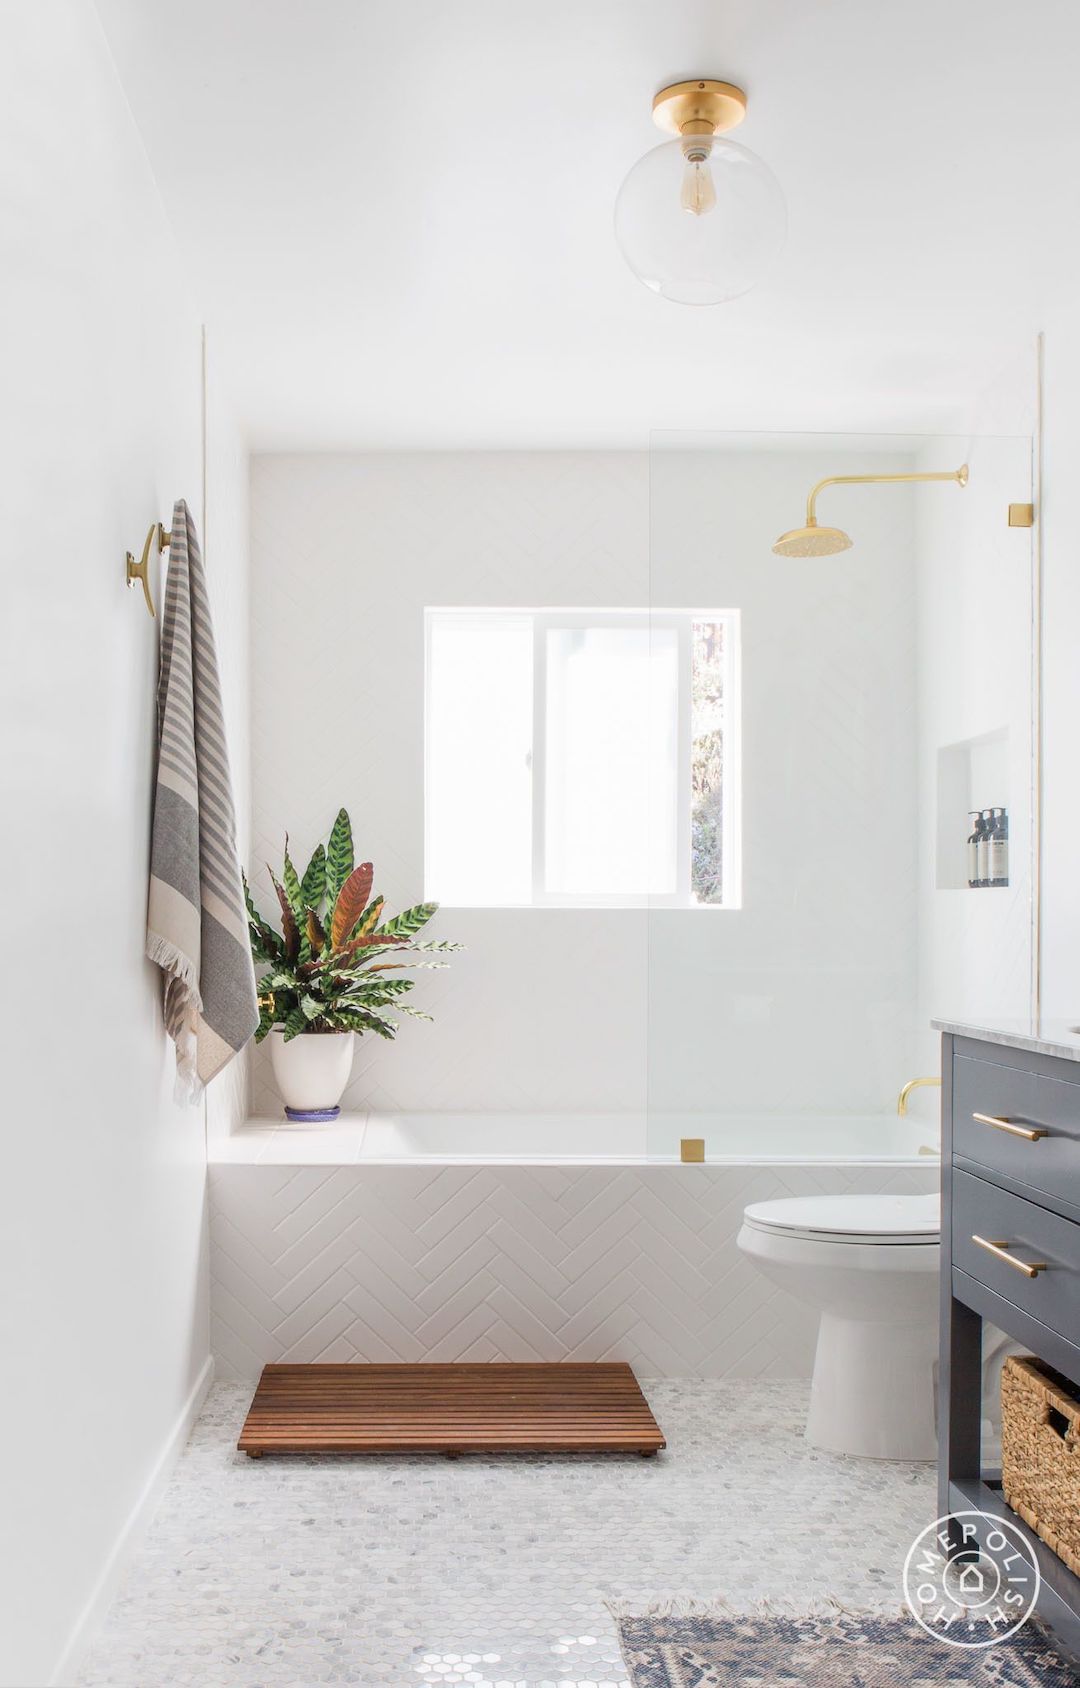 salle de bain total look blanc accessoires laiton tapis bois cloison vitre